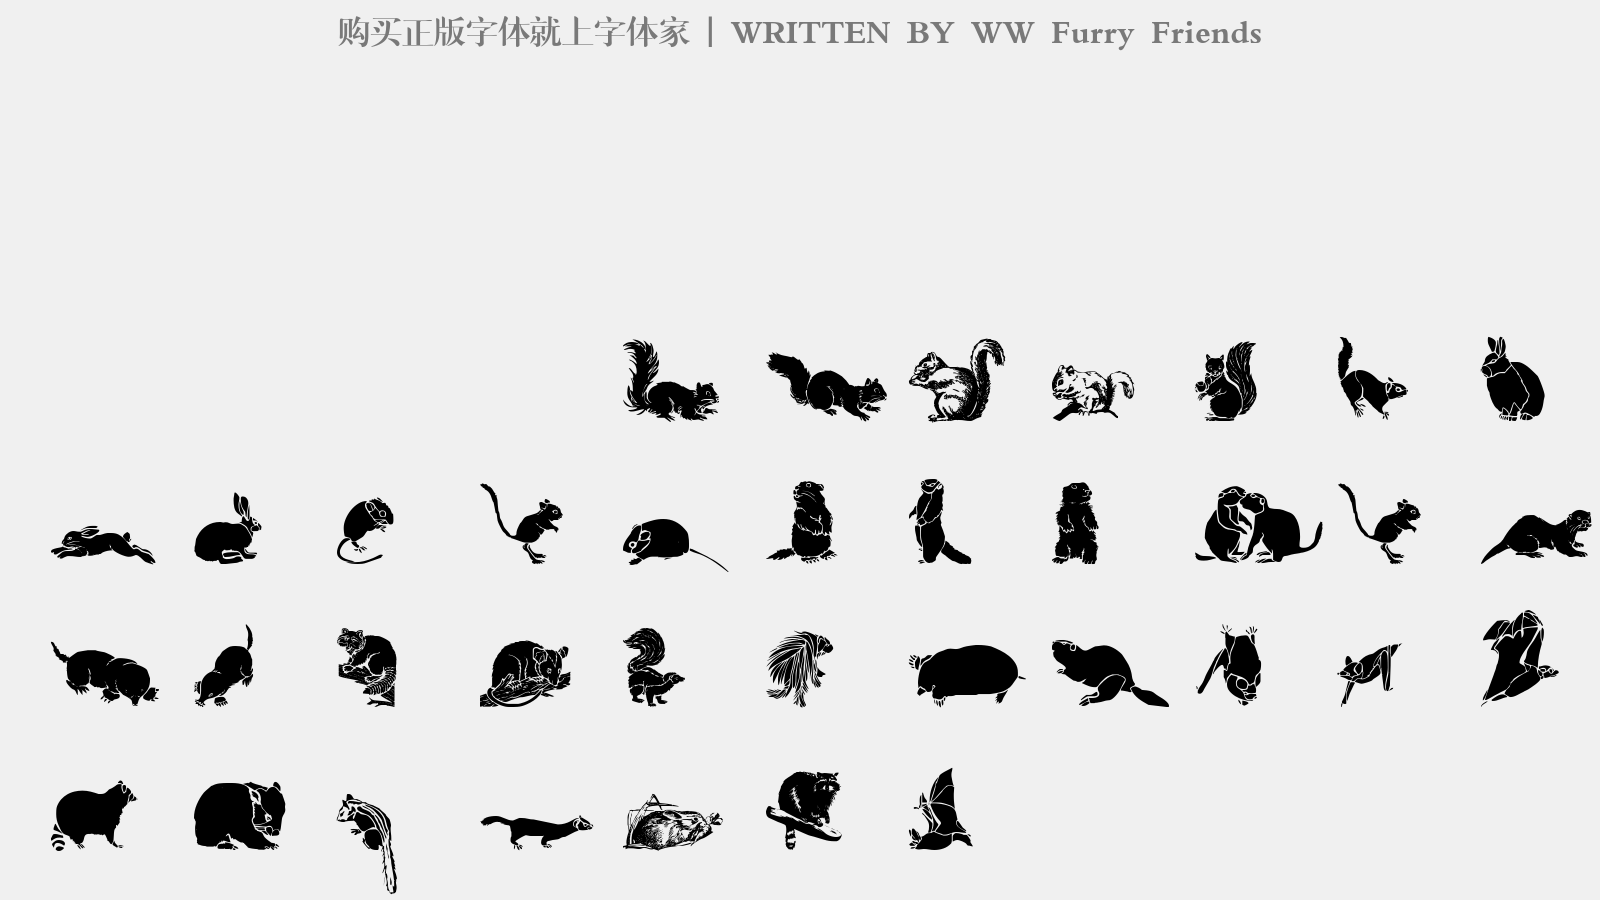 WW Furry Friends - 大写字母/小写字母/数字